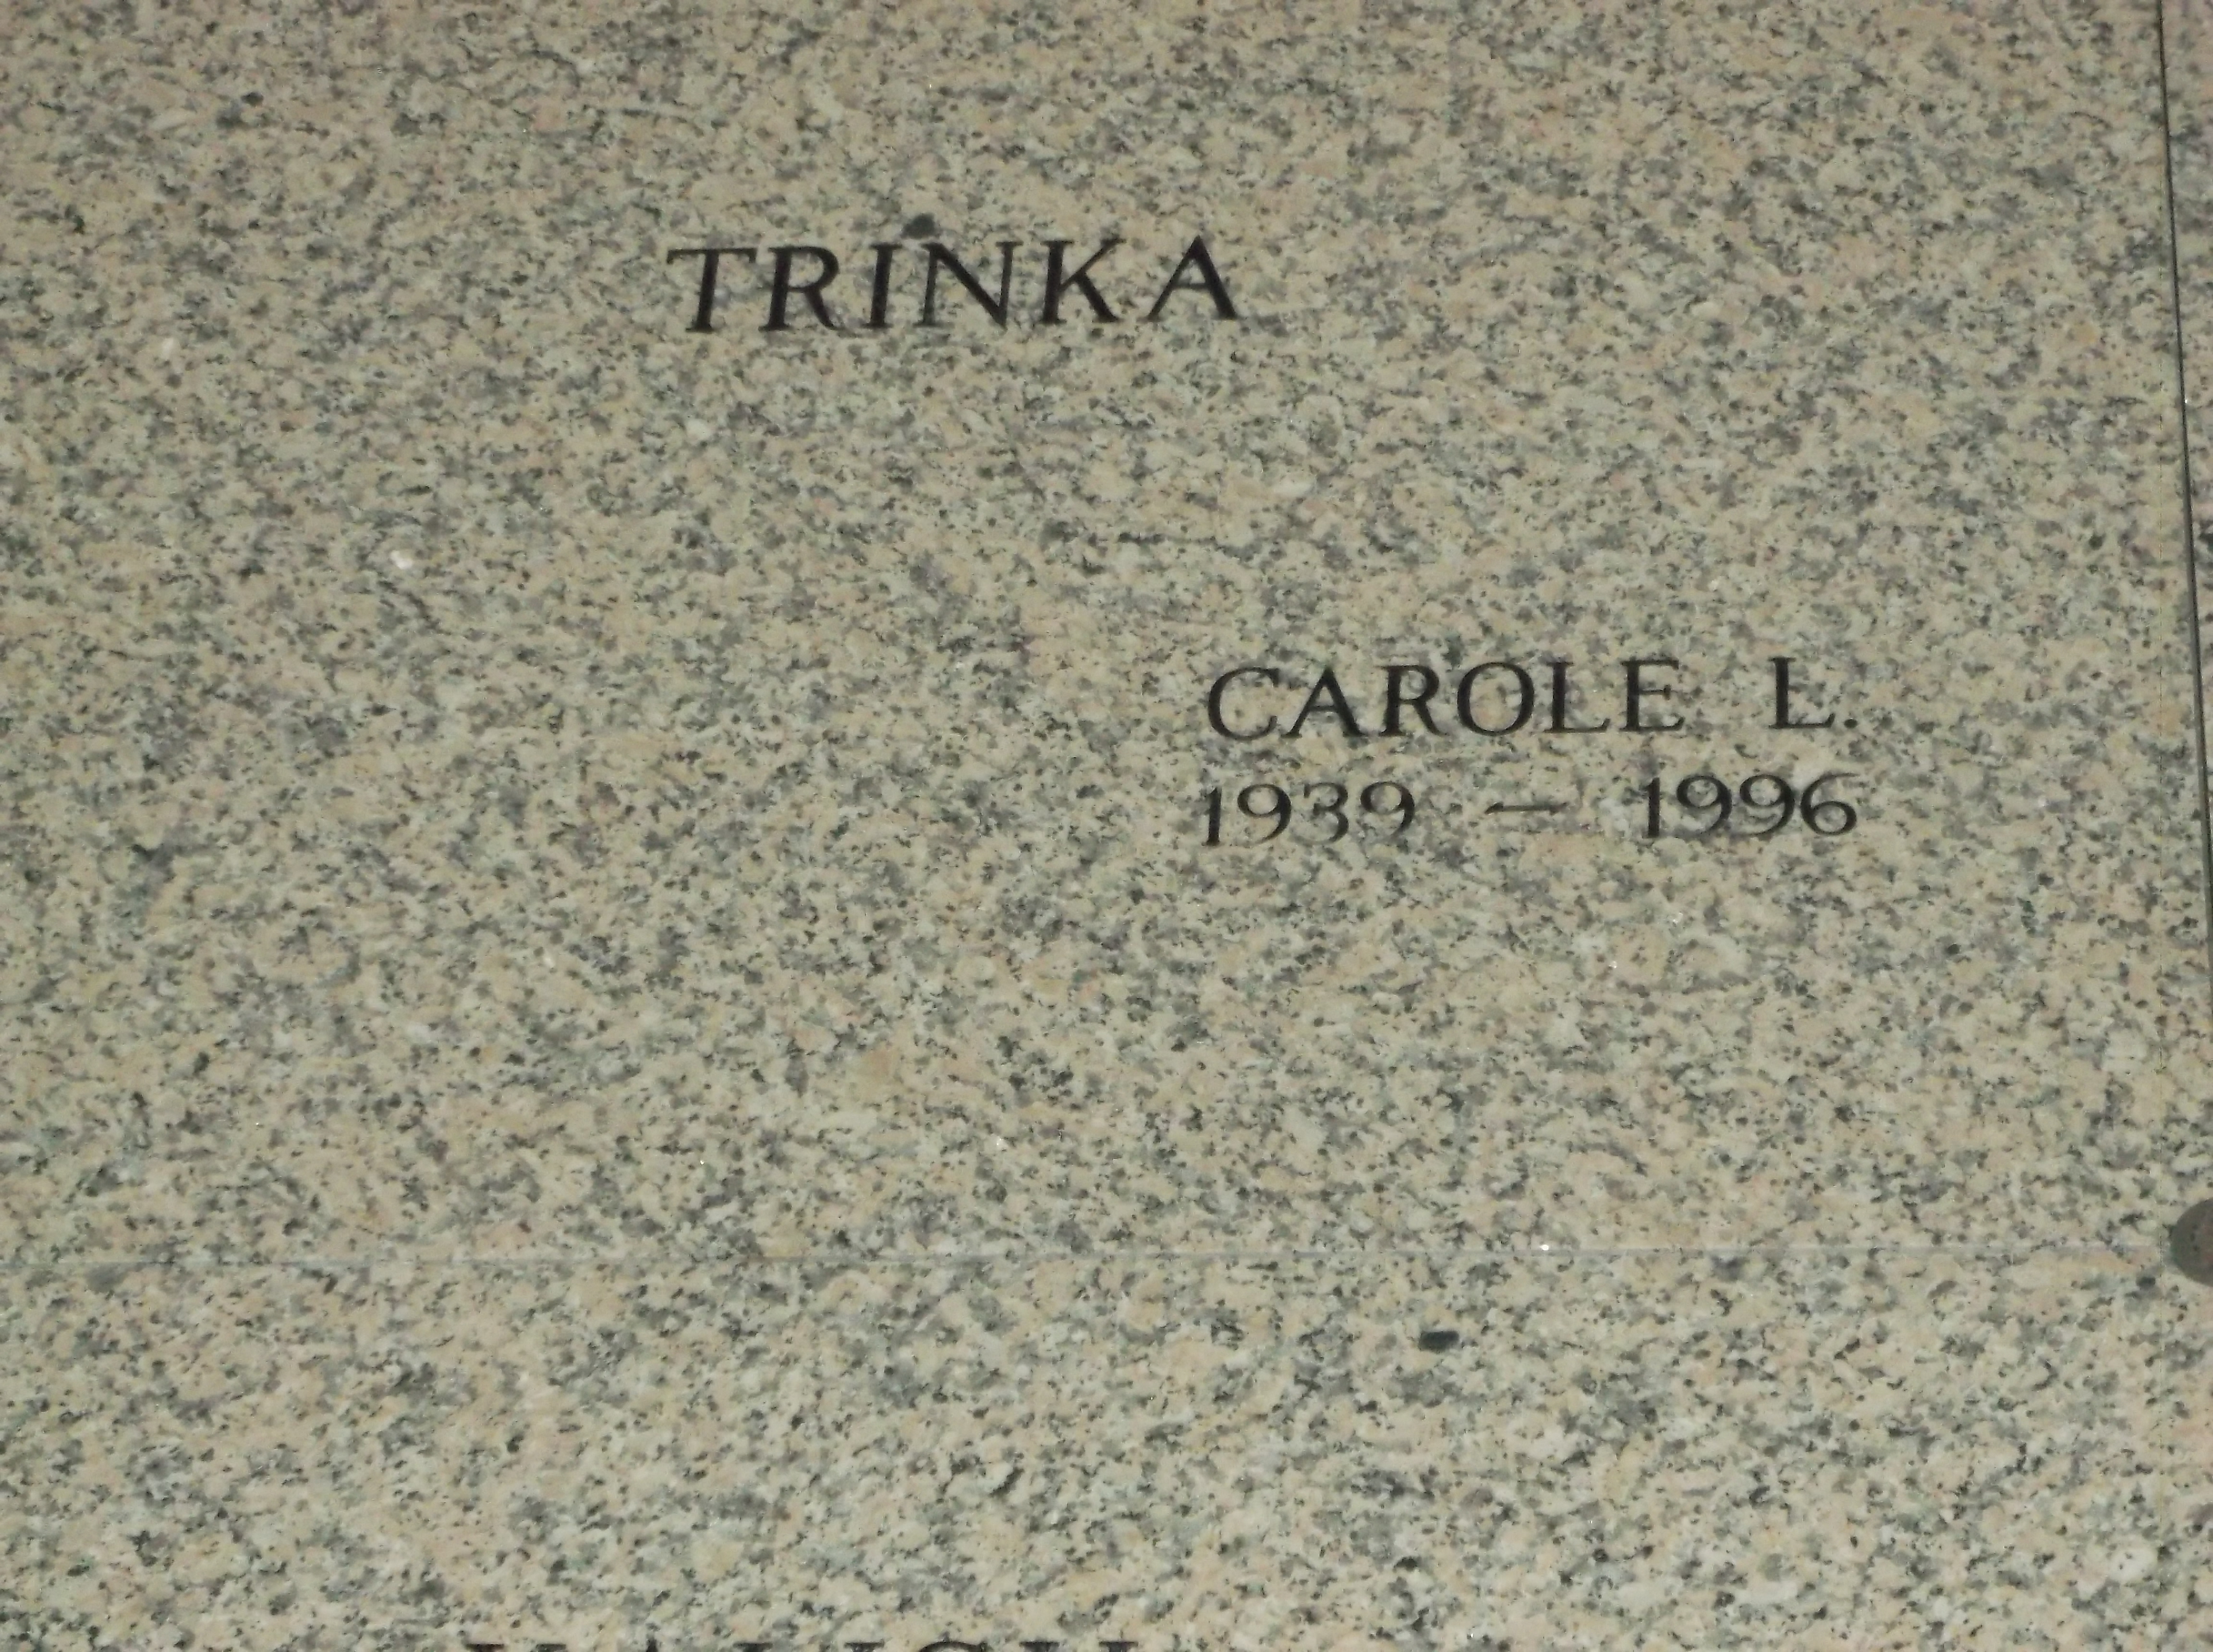 Carole L Trinka